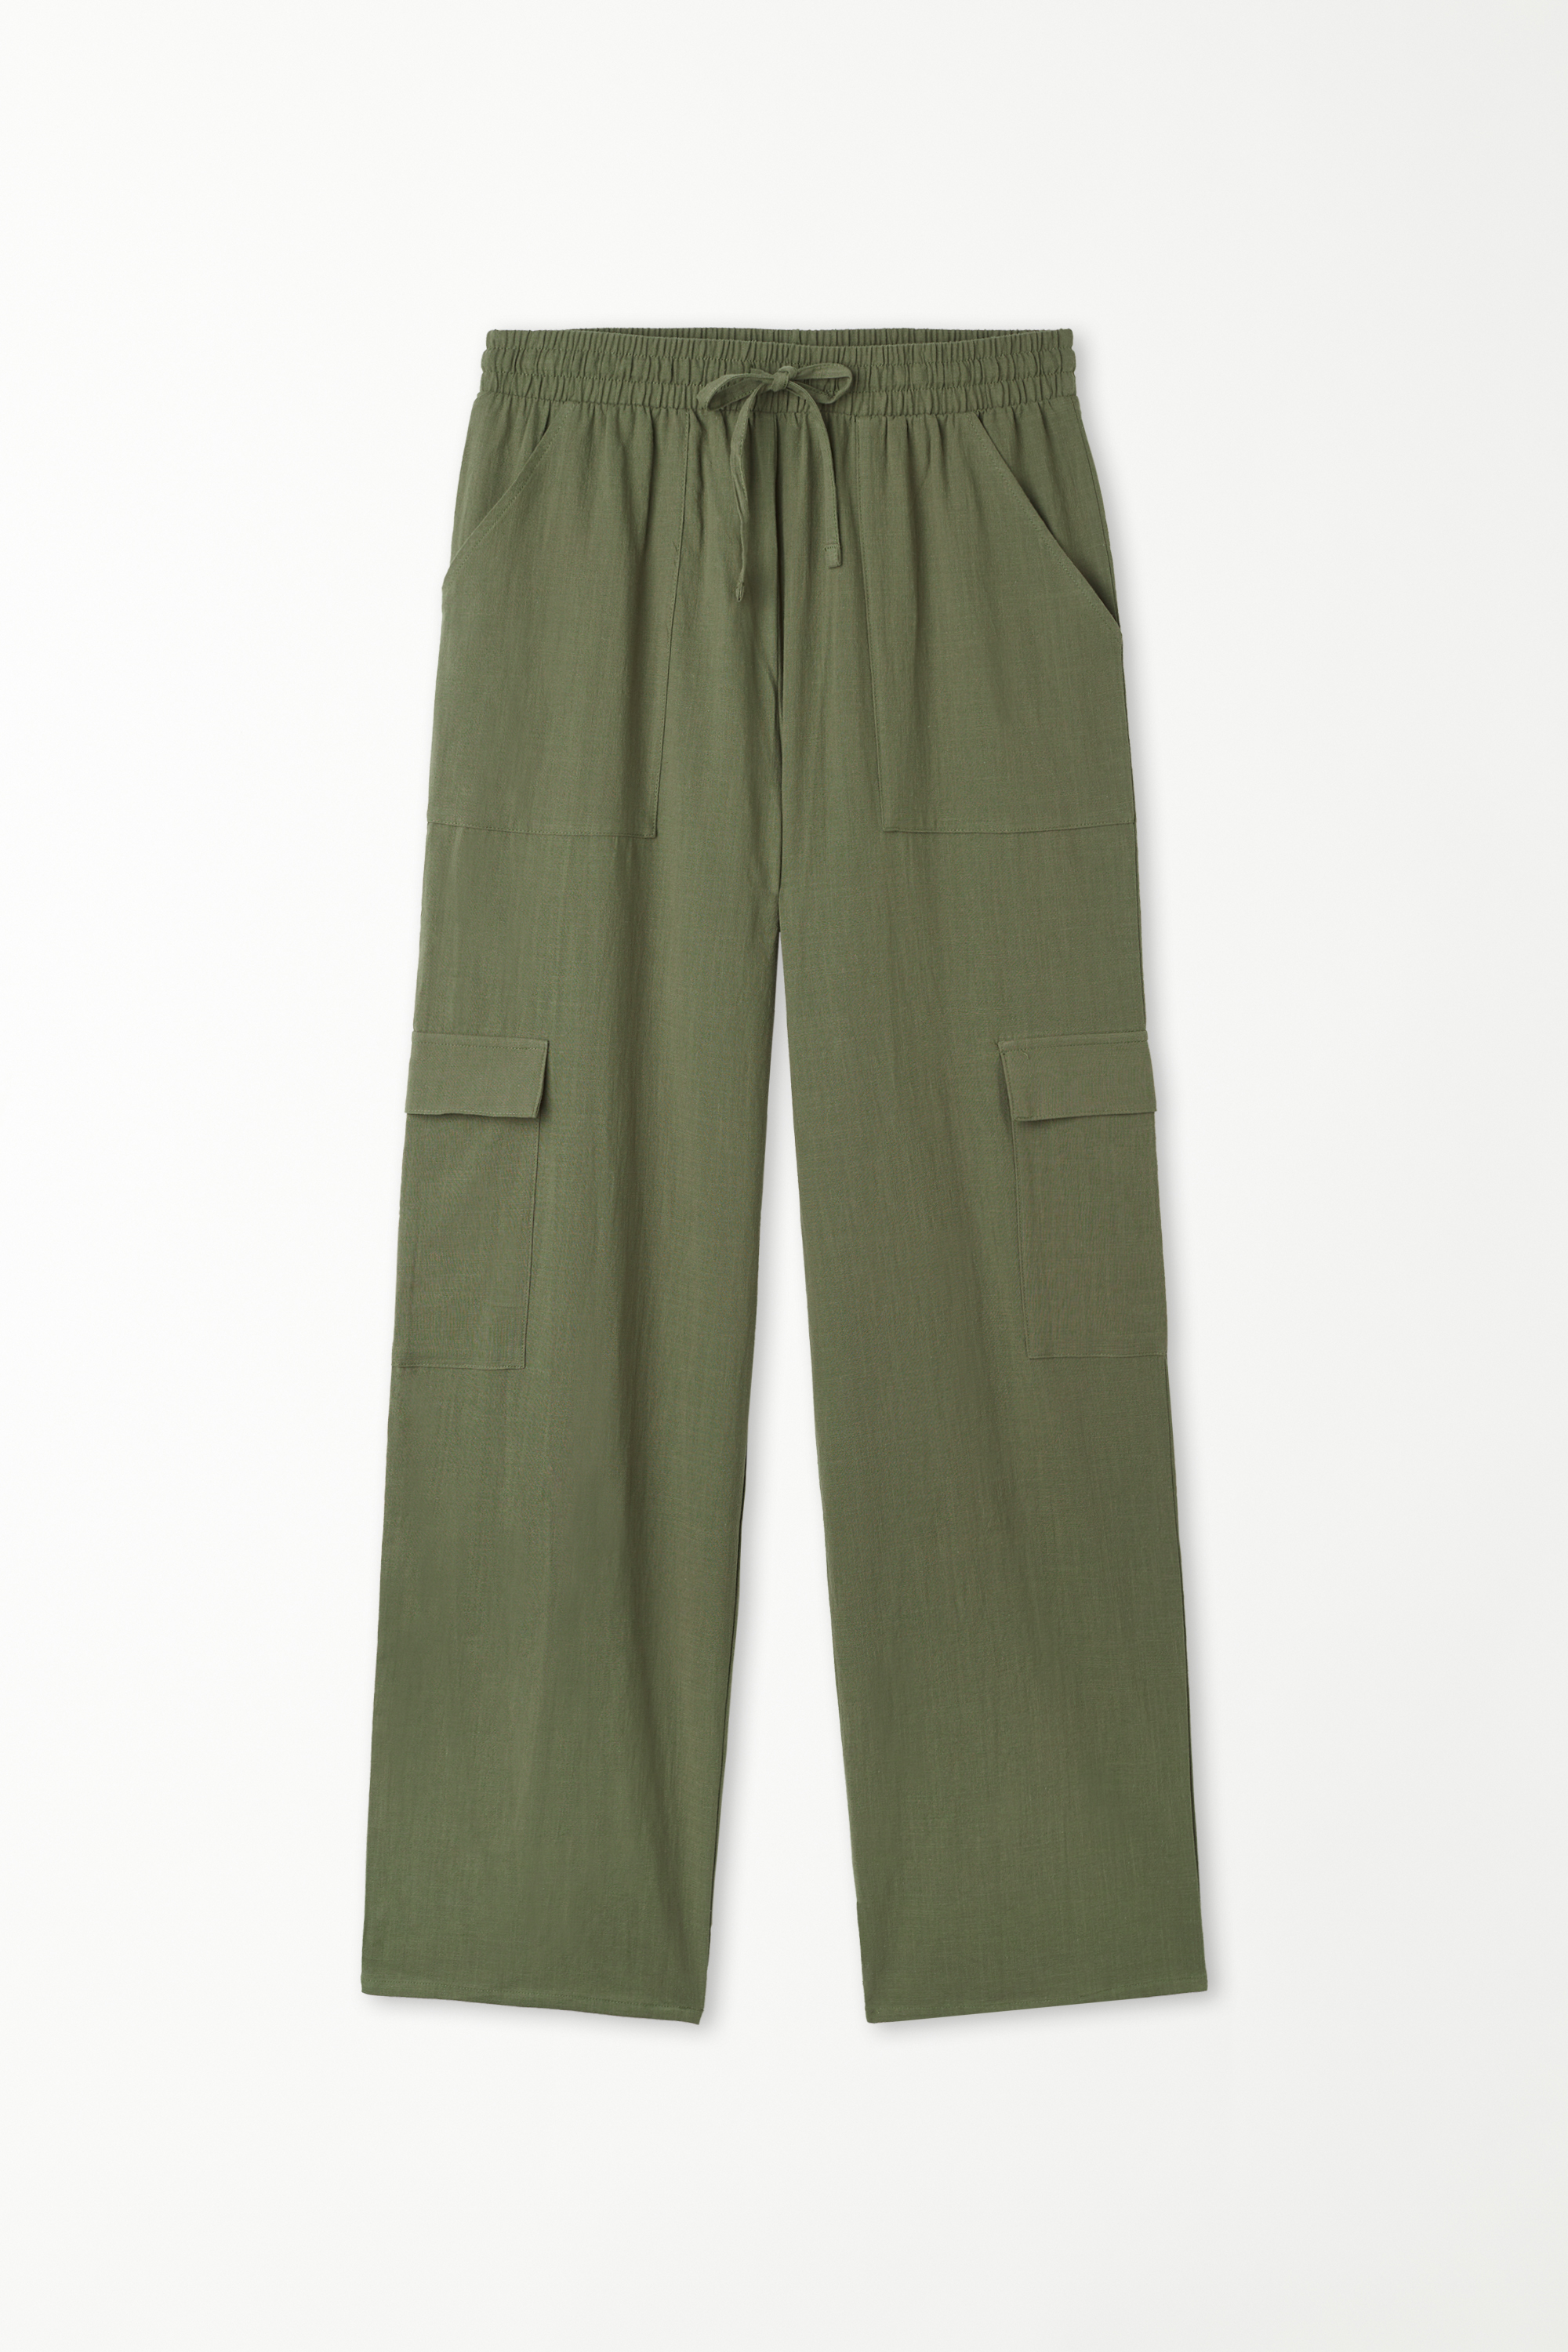 Pantalon 100 % Coton Ultra-léger avec Poches Cargo